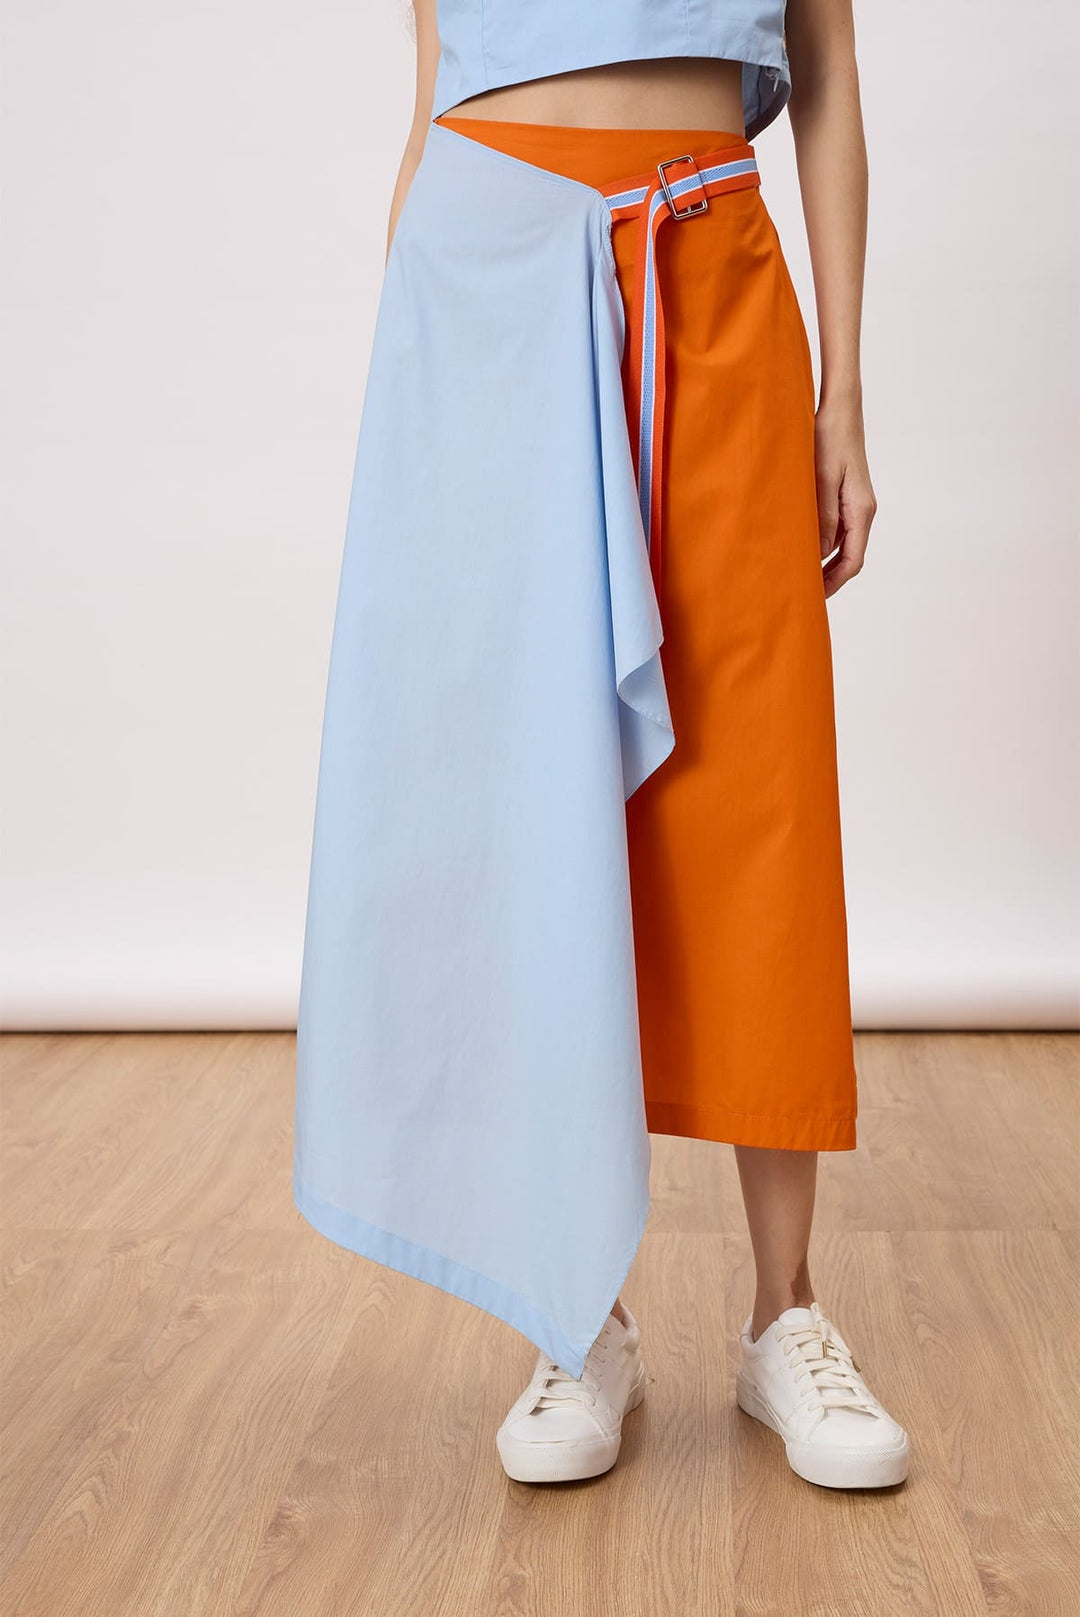 Rowan Skirt An A-line skirt with an assymertical drape layer